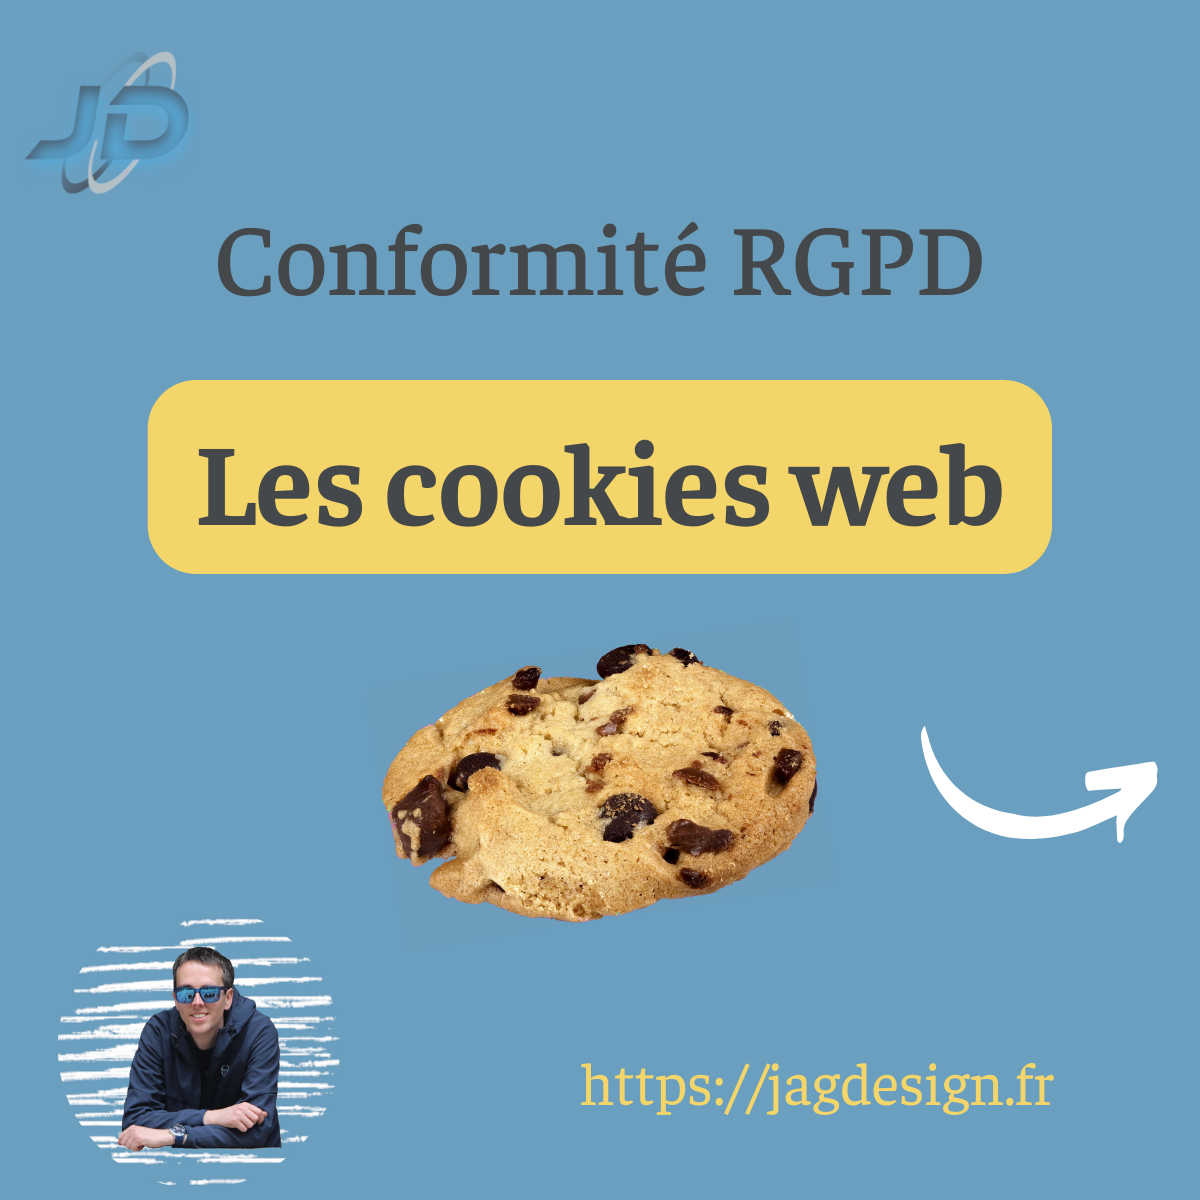 Comment obtenir la conformité RGPD sur les cookies web ?